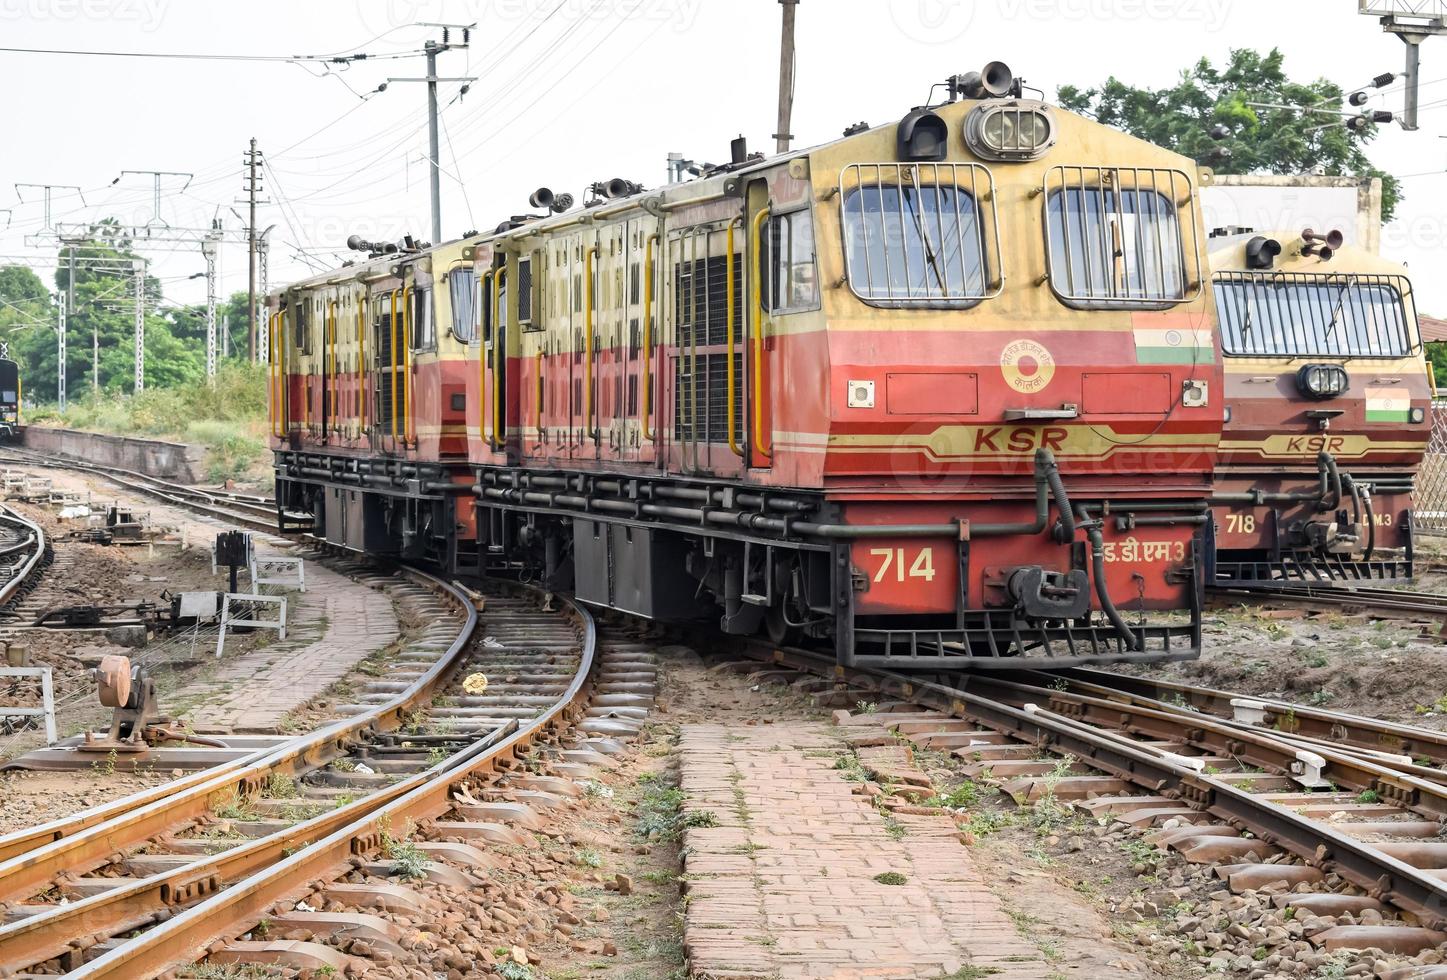 kalka, haryana, india 14 de mayo de 2022 - motor de locomotora diesel de tren de juguete indio en la estación de tren de kalka durante el día, motor de locomotora diesel de tren de juguete kalka shimla foto